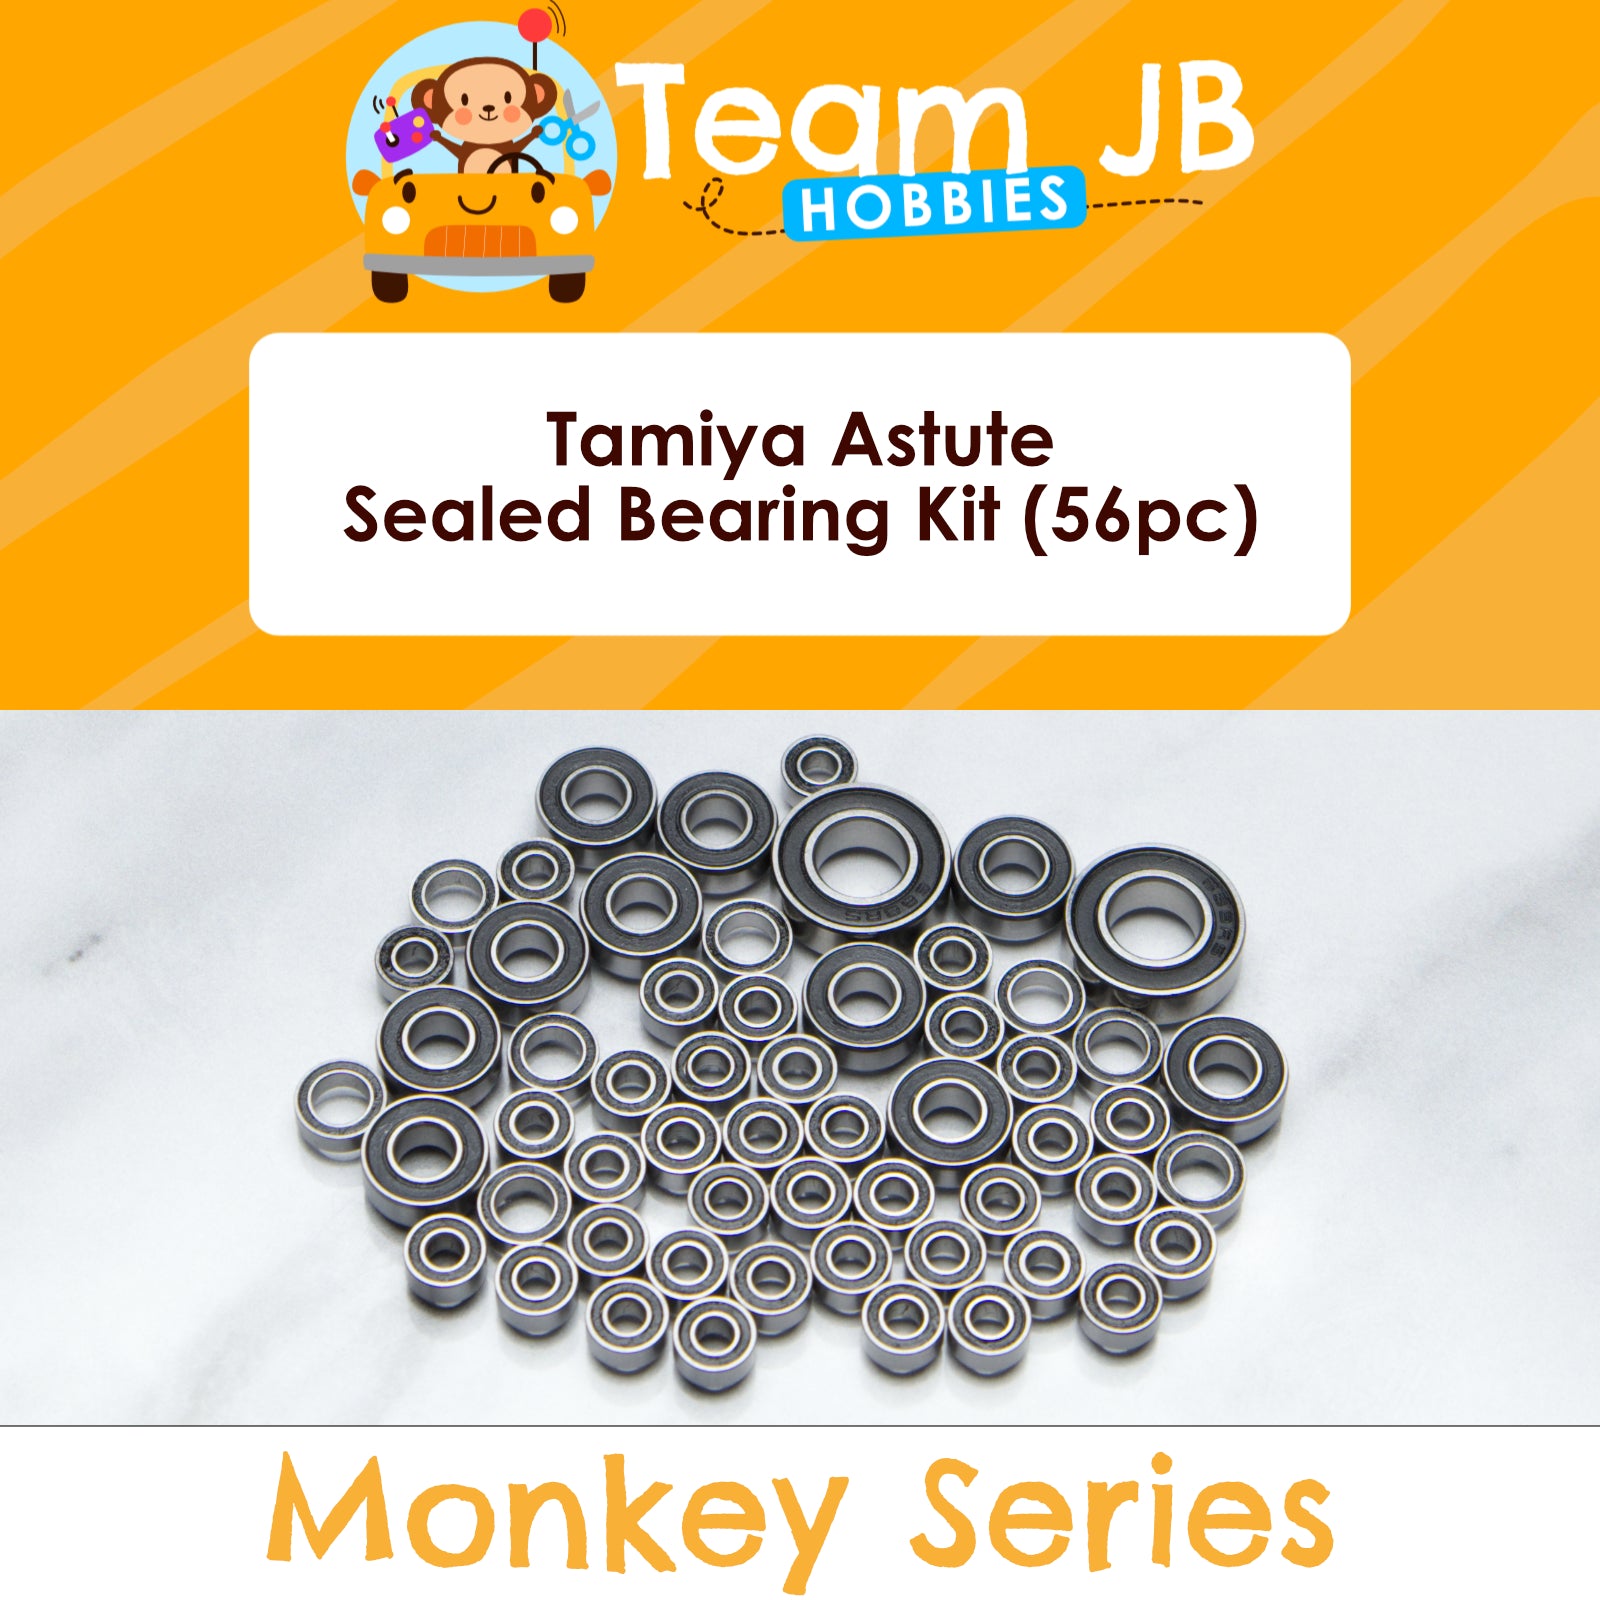 Tamiya Astute - Sealed Bearing Kit